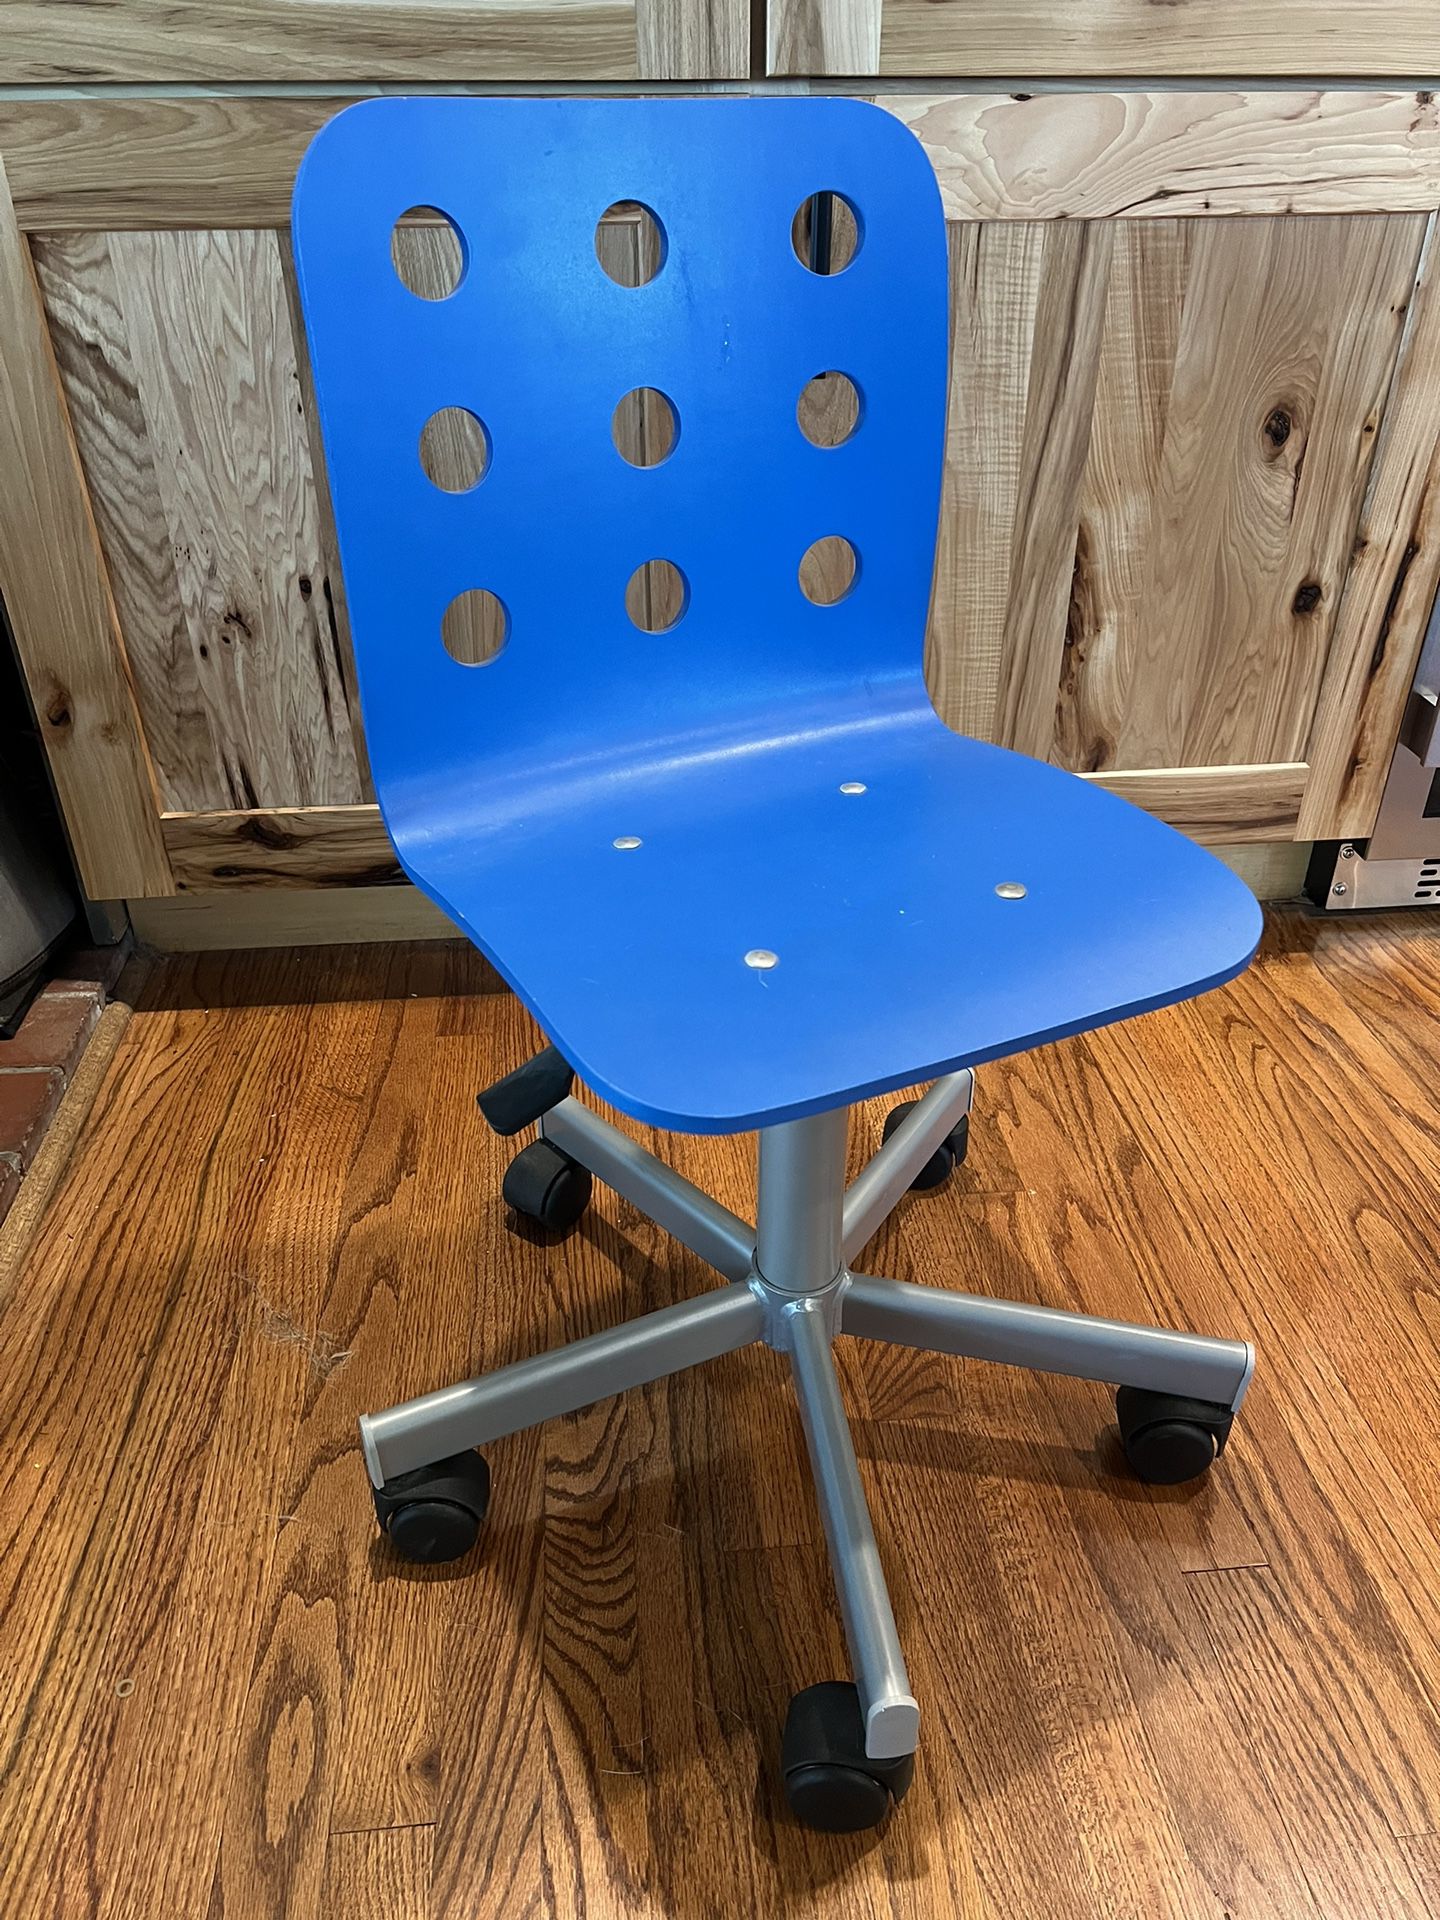 Kids chair